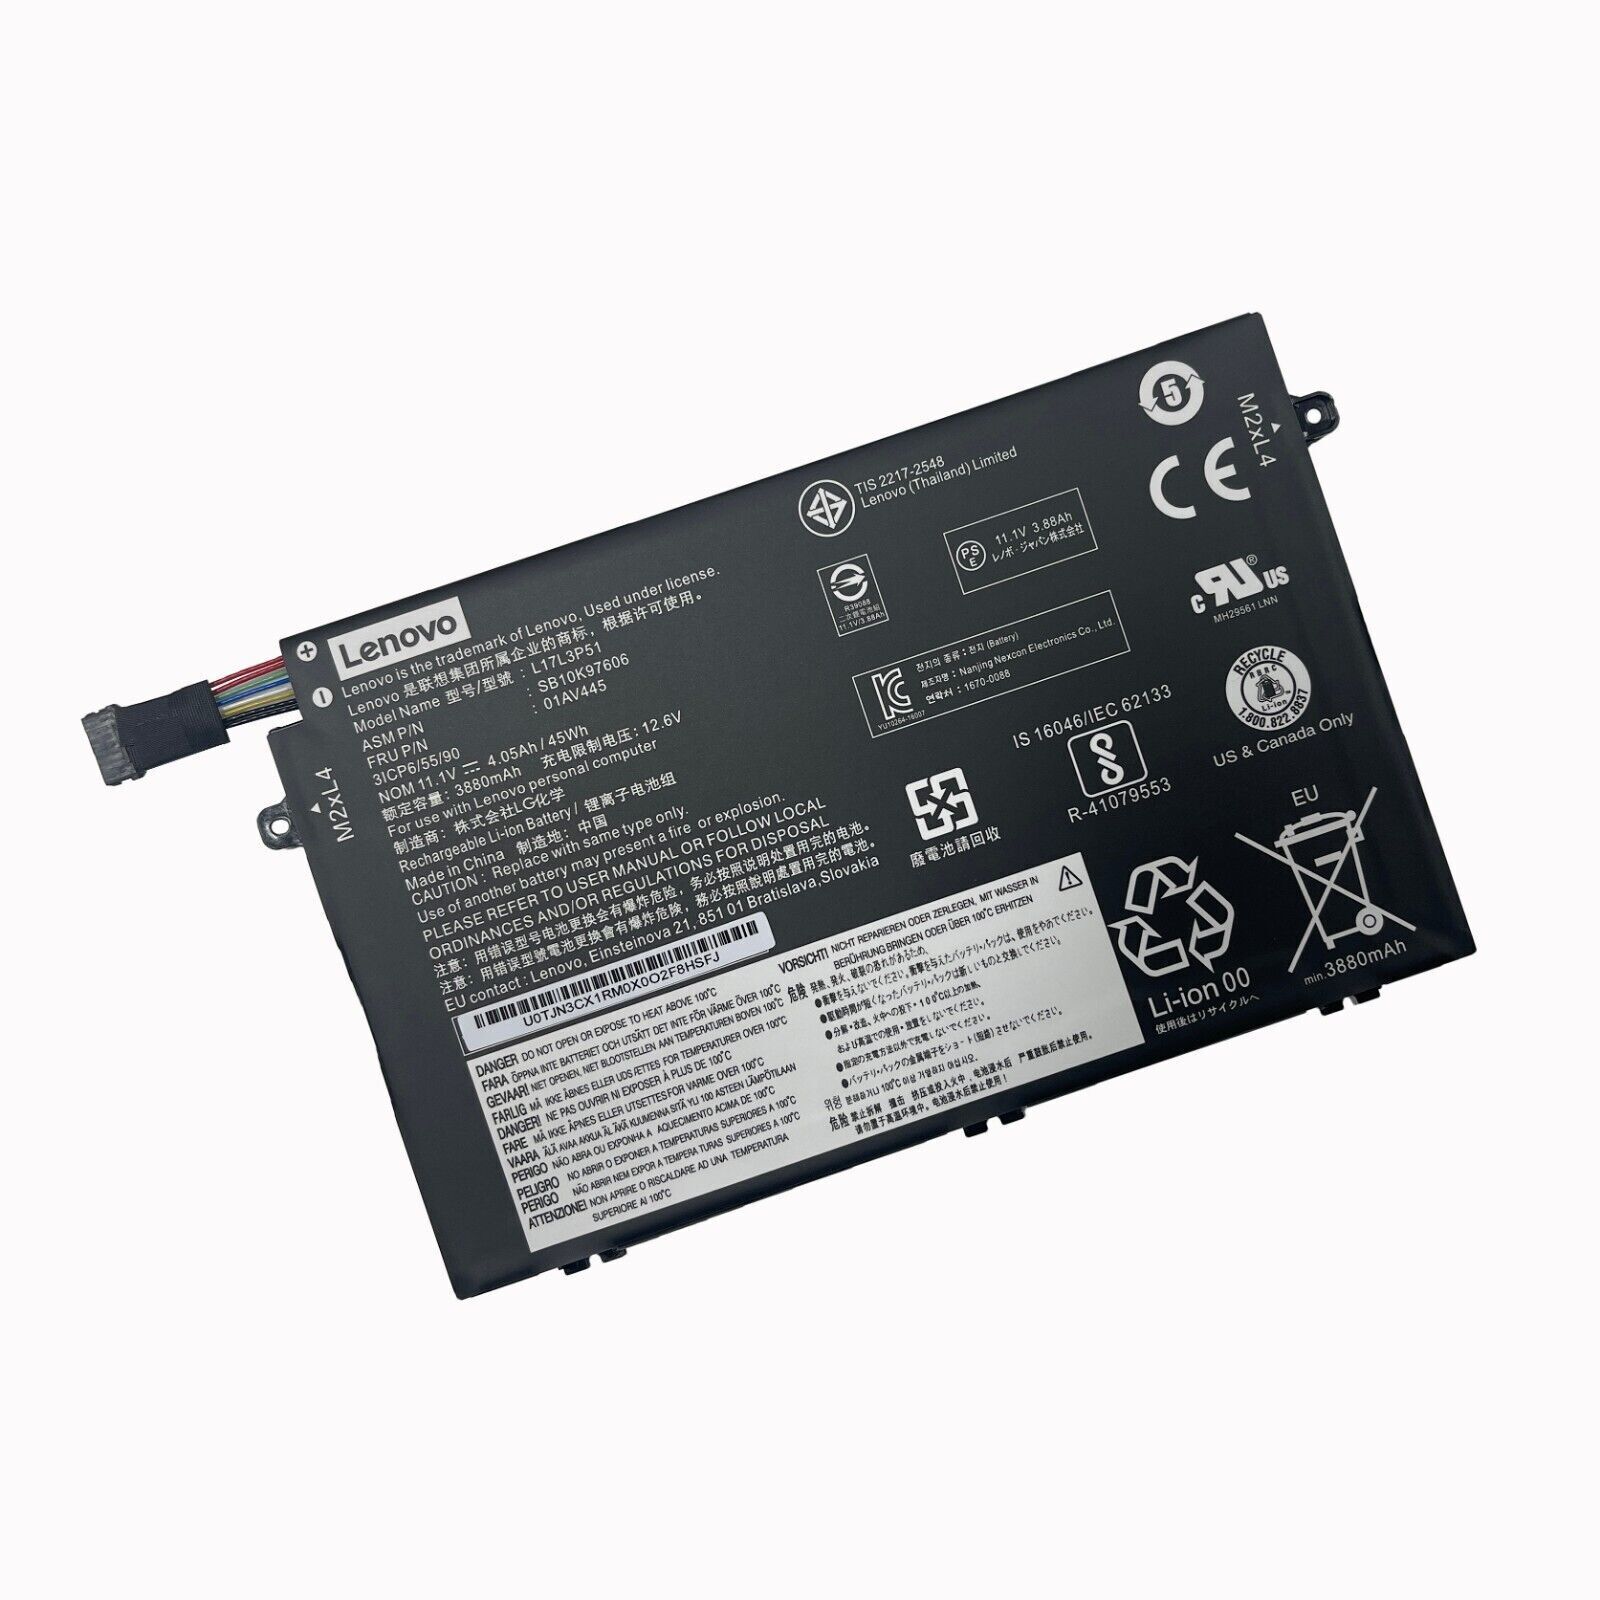 OEM Genuine L17L3P51 01AV445 01AV446 Battery For Lenovo ThinkPad E480 E580 E490